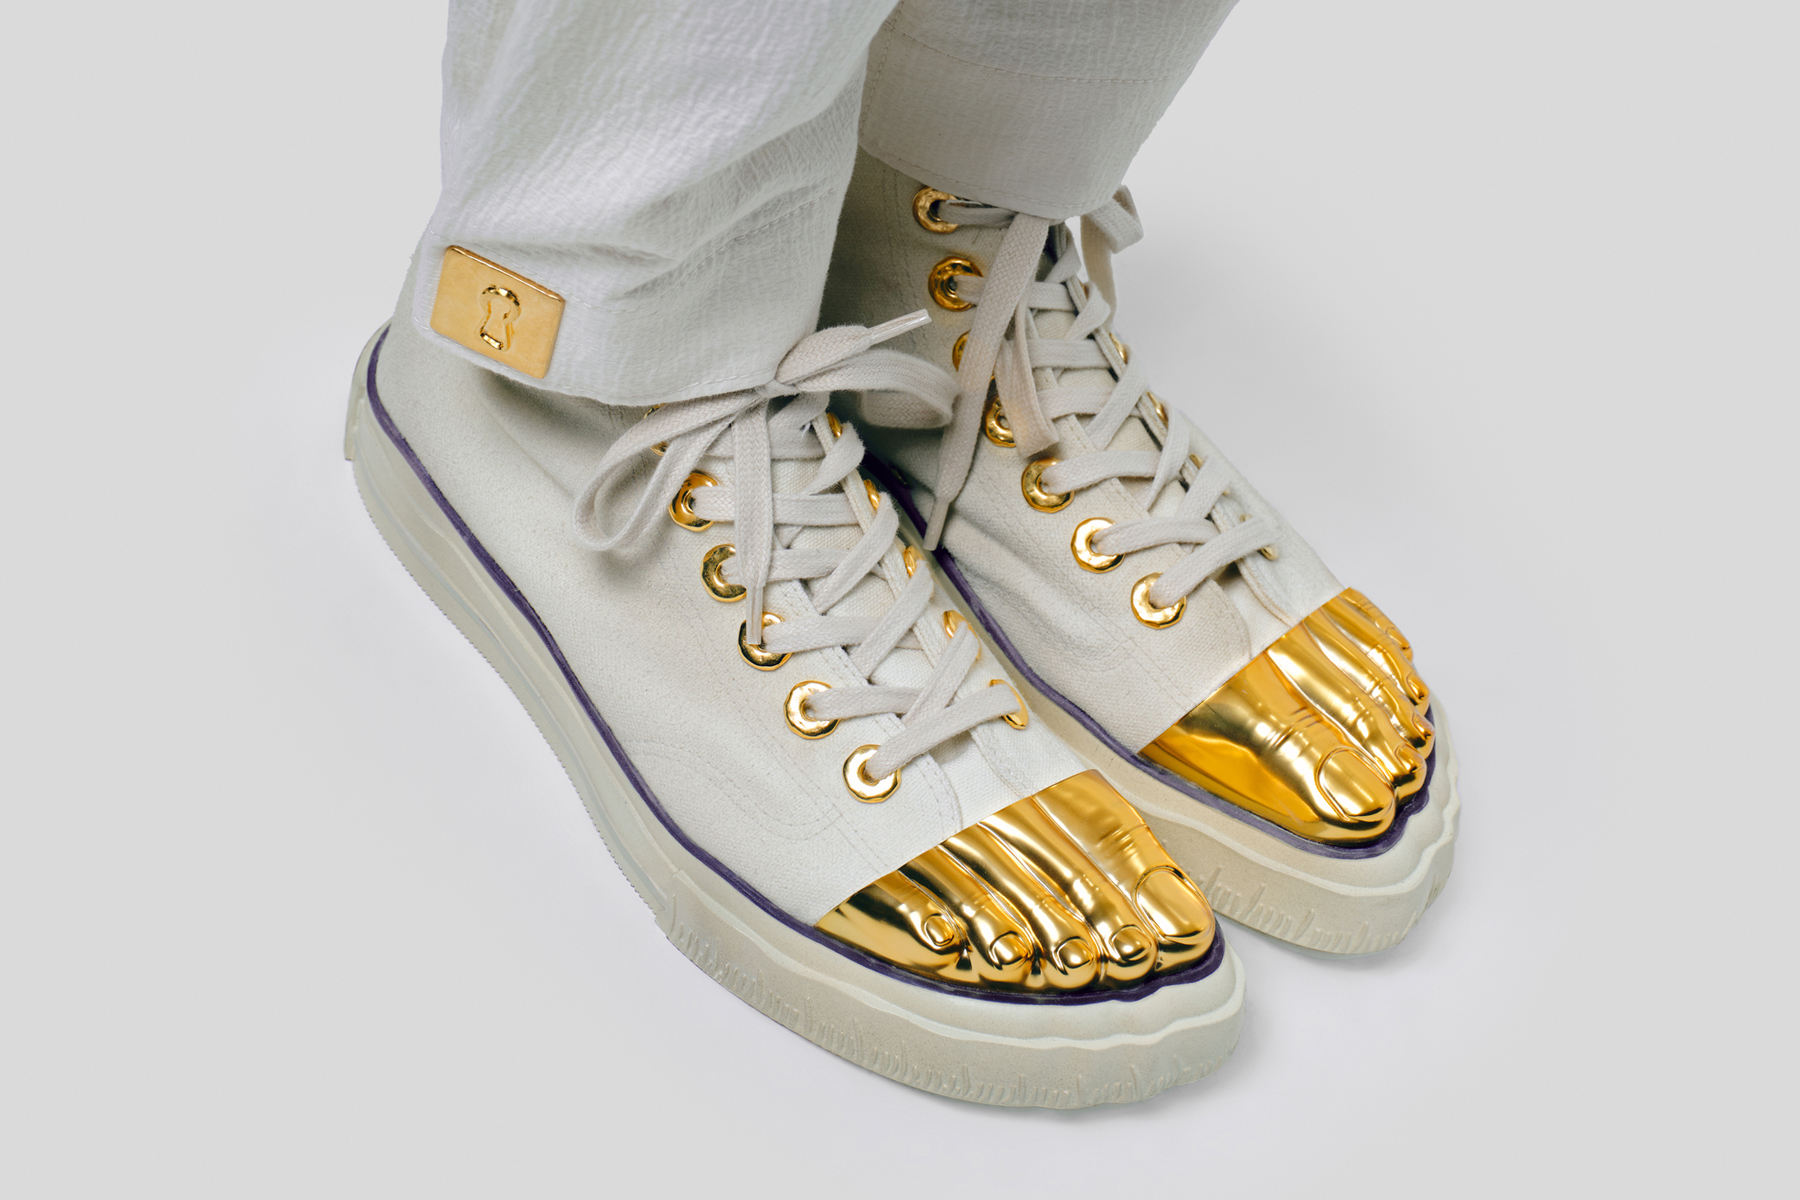 Schiaparelli Gold Toe Trainers prime sneaker